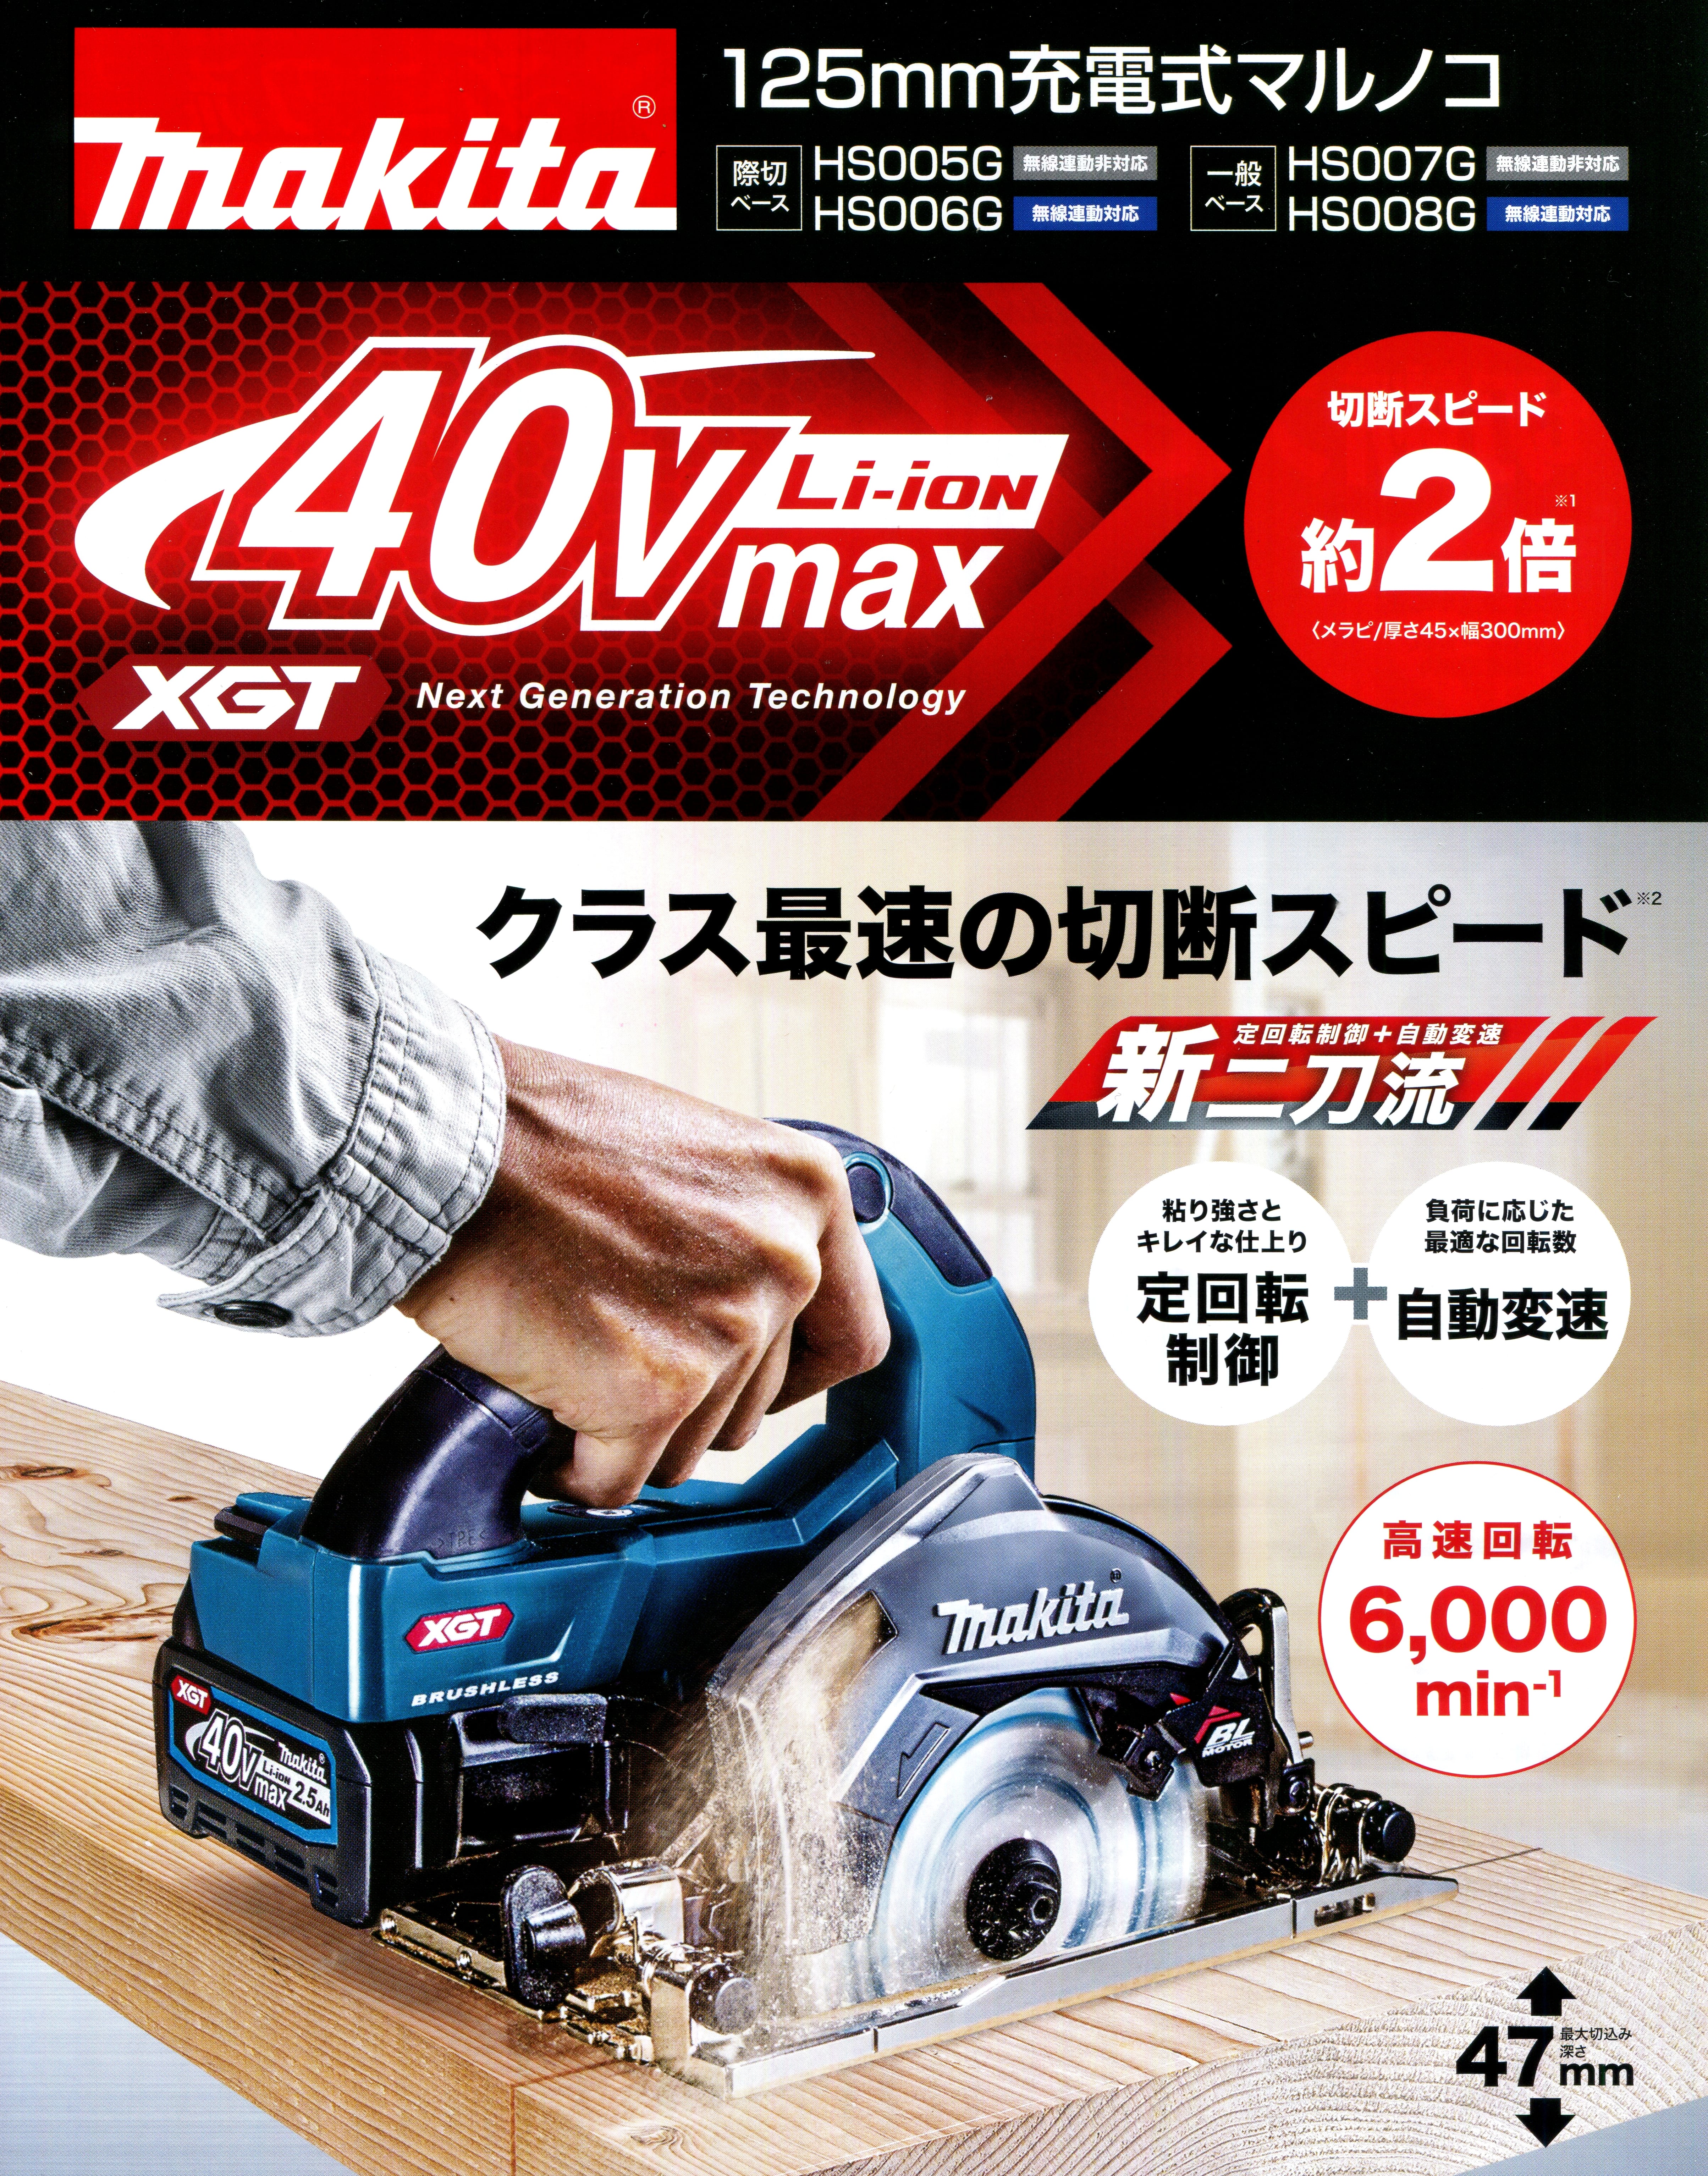 マキタ HS005GRDX 40Vmax充電式マルノコ 125mm【際切りベース】 ウエダ金物【公式サイト】